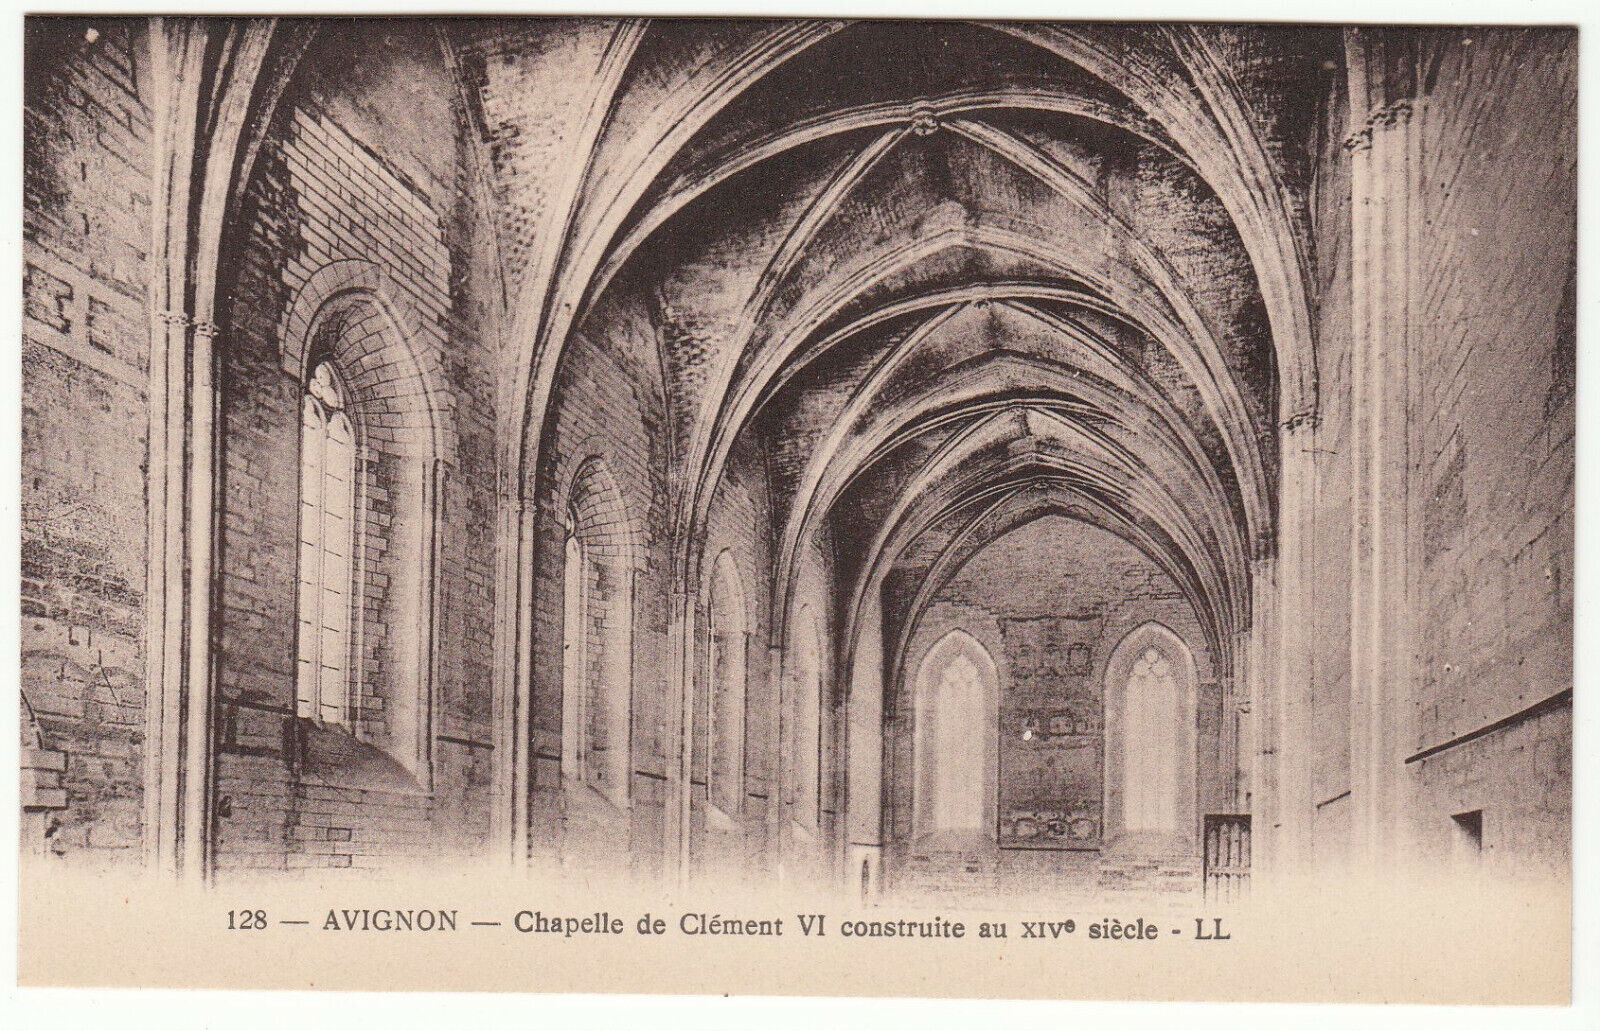 CARTE POSTALE AVIGNON CHAPELLE DE CLEMENT VI CONSTRUITE AU XIV S 124014532558